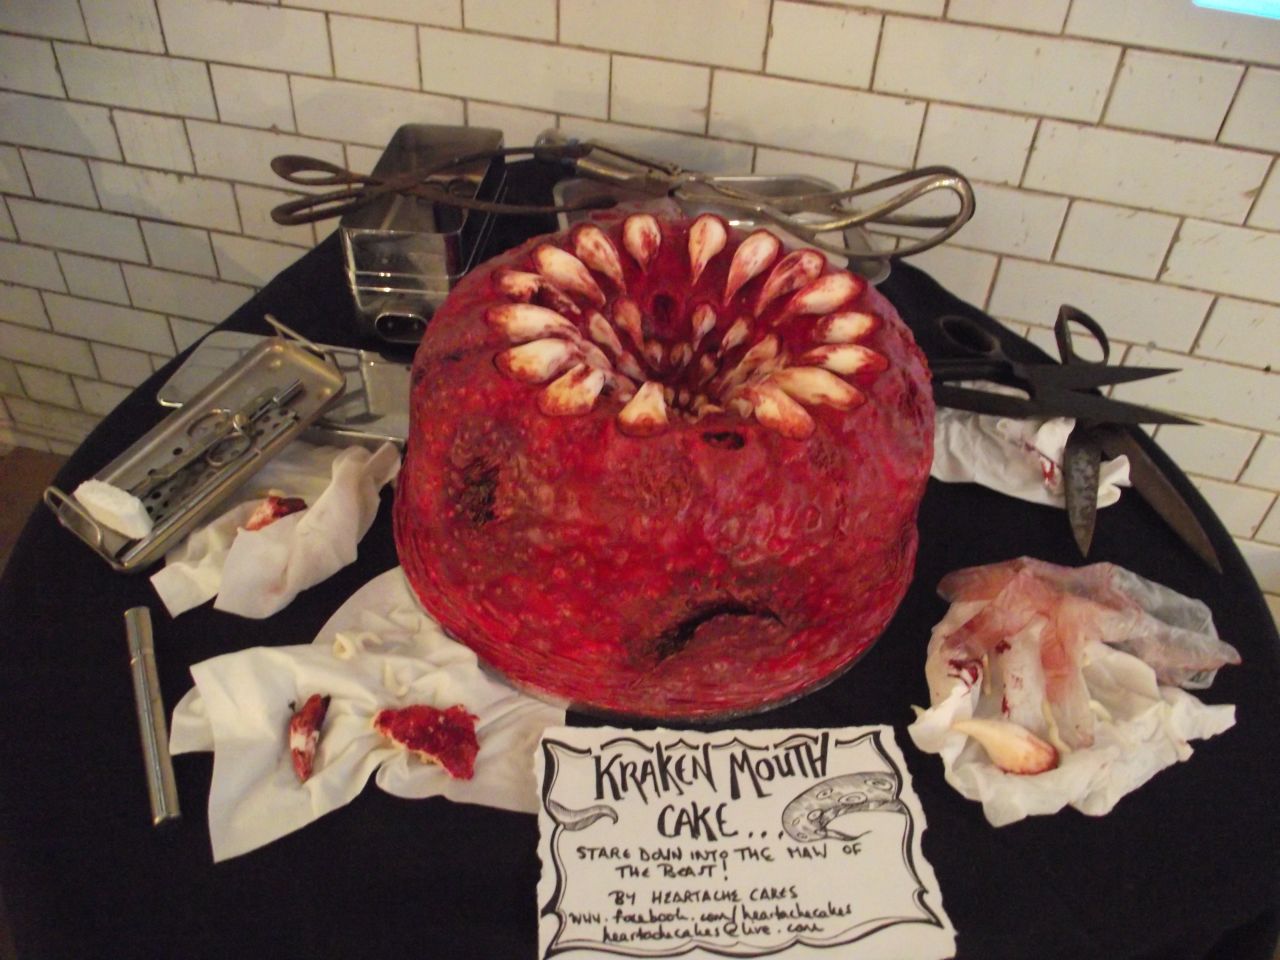 Mira la boca del 'kraken'. En realidad es un pastel condimentado con canela y nuez moscada hecho por Heartache Cakes.